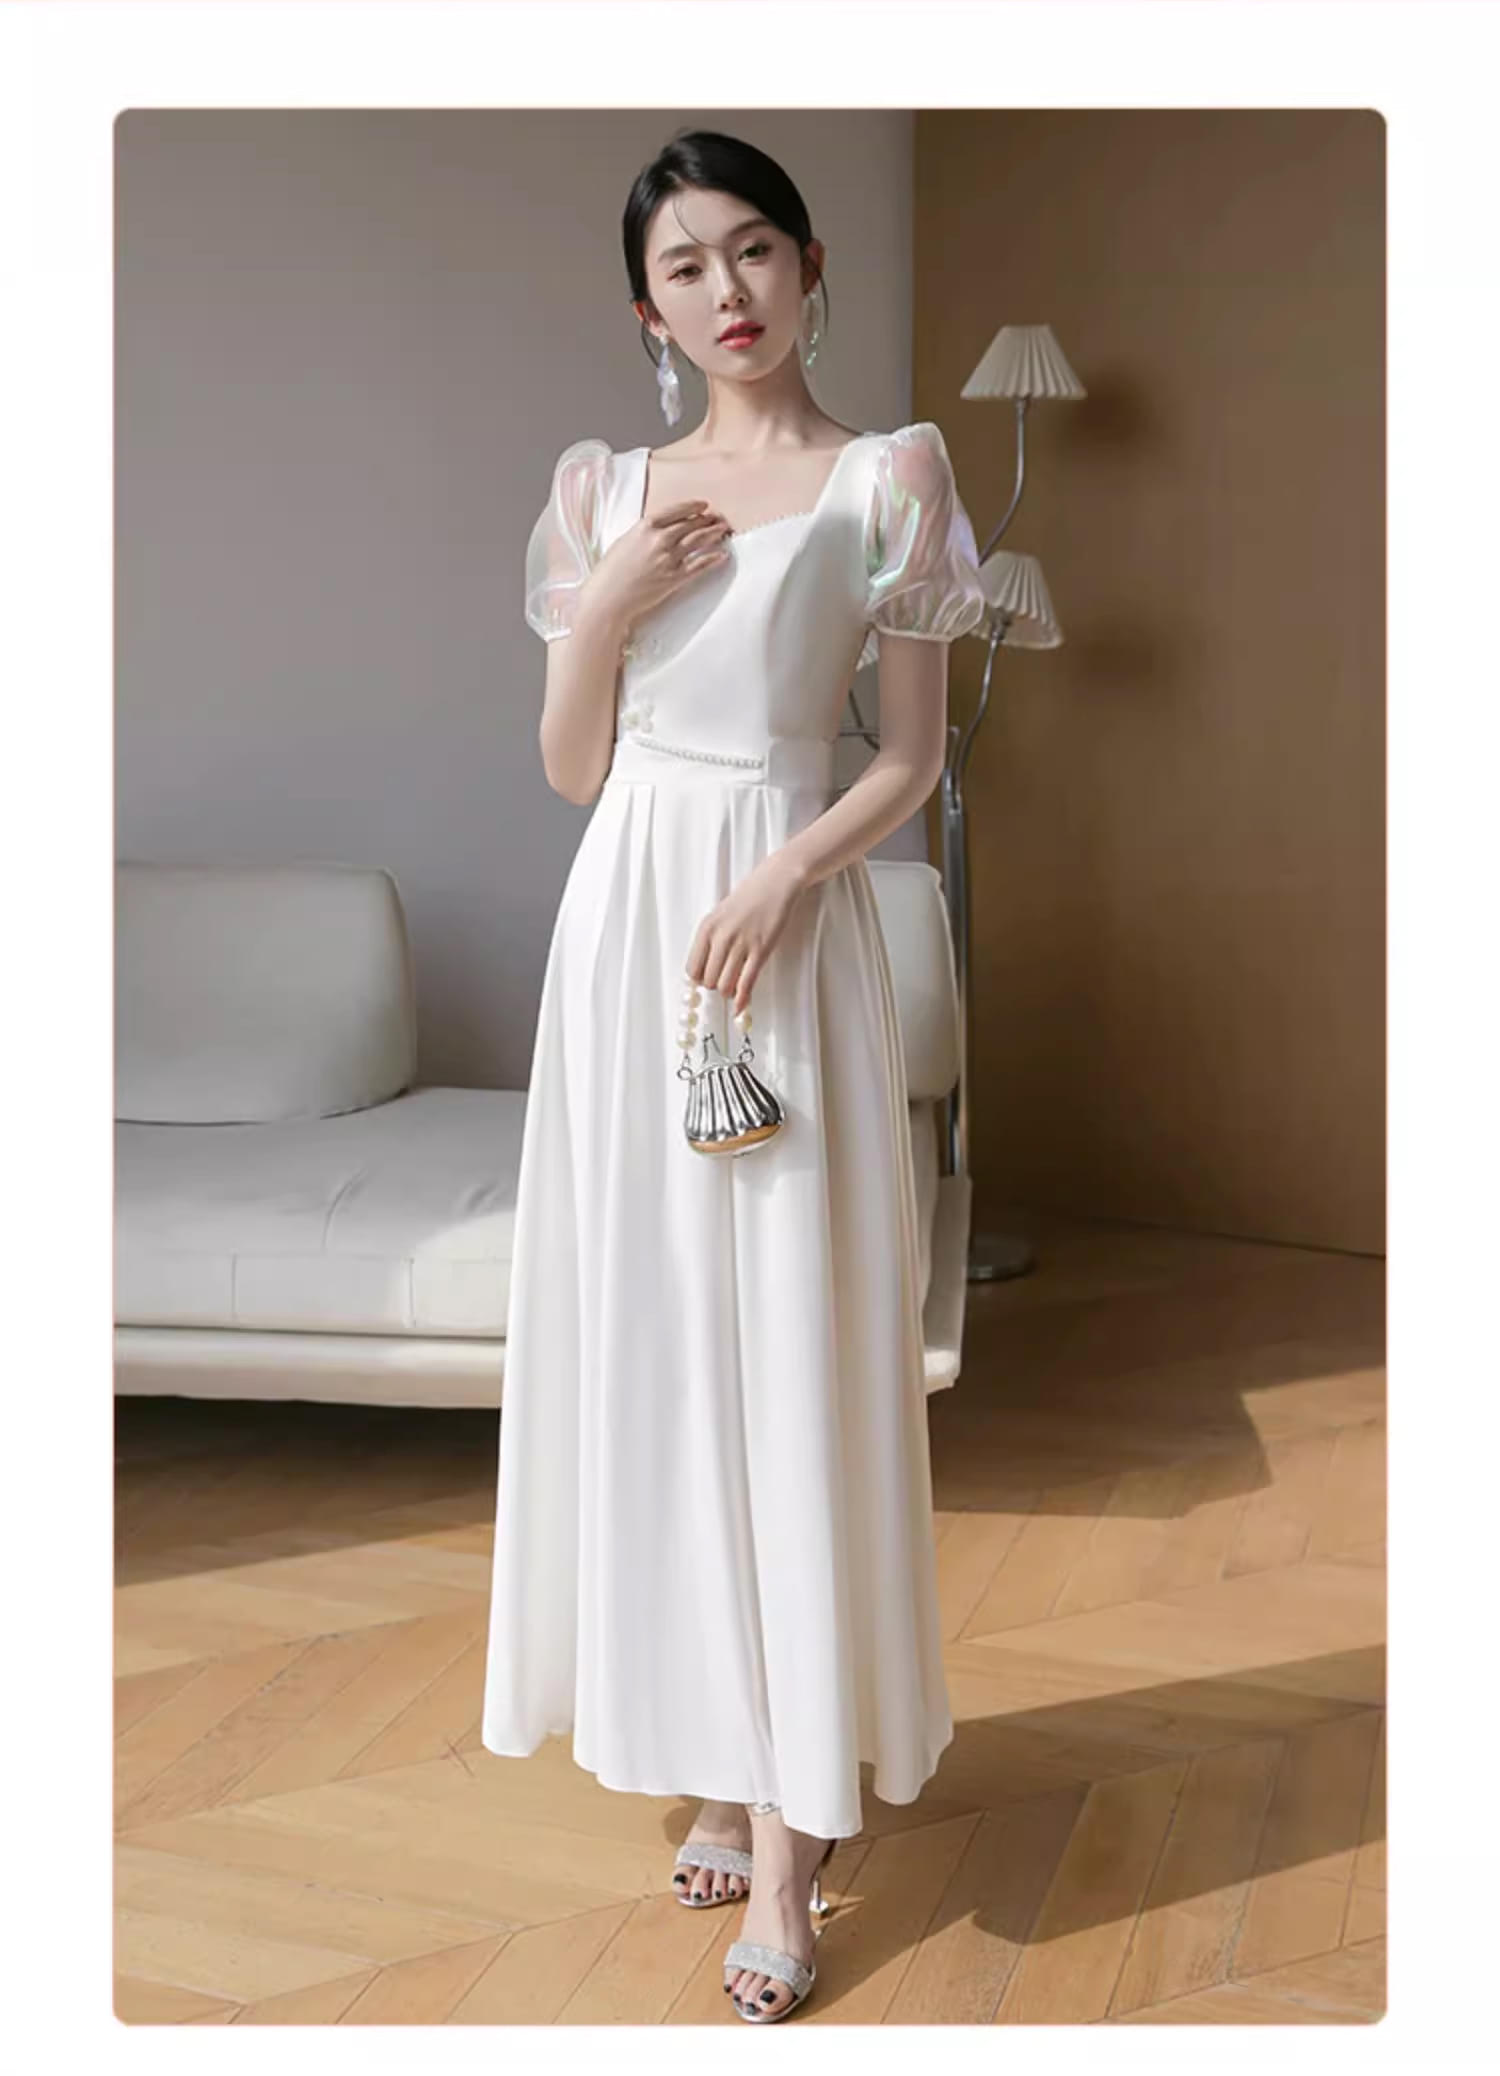 Unique-White-Wedding-Bridal-Party-Attire-Long-Dress-Evening-Gown18